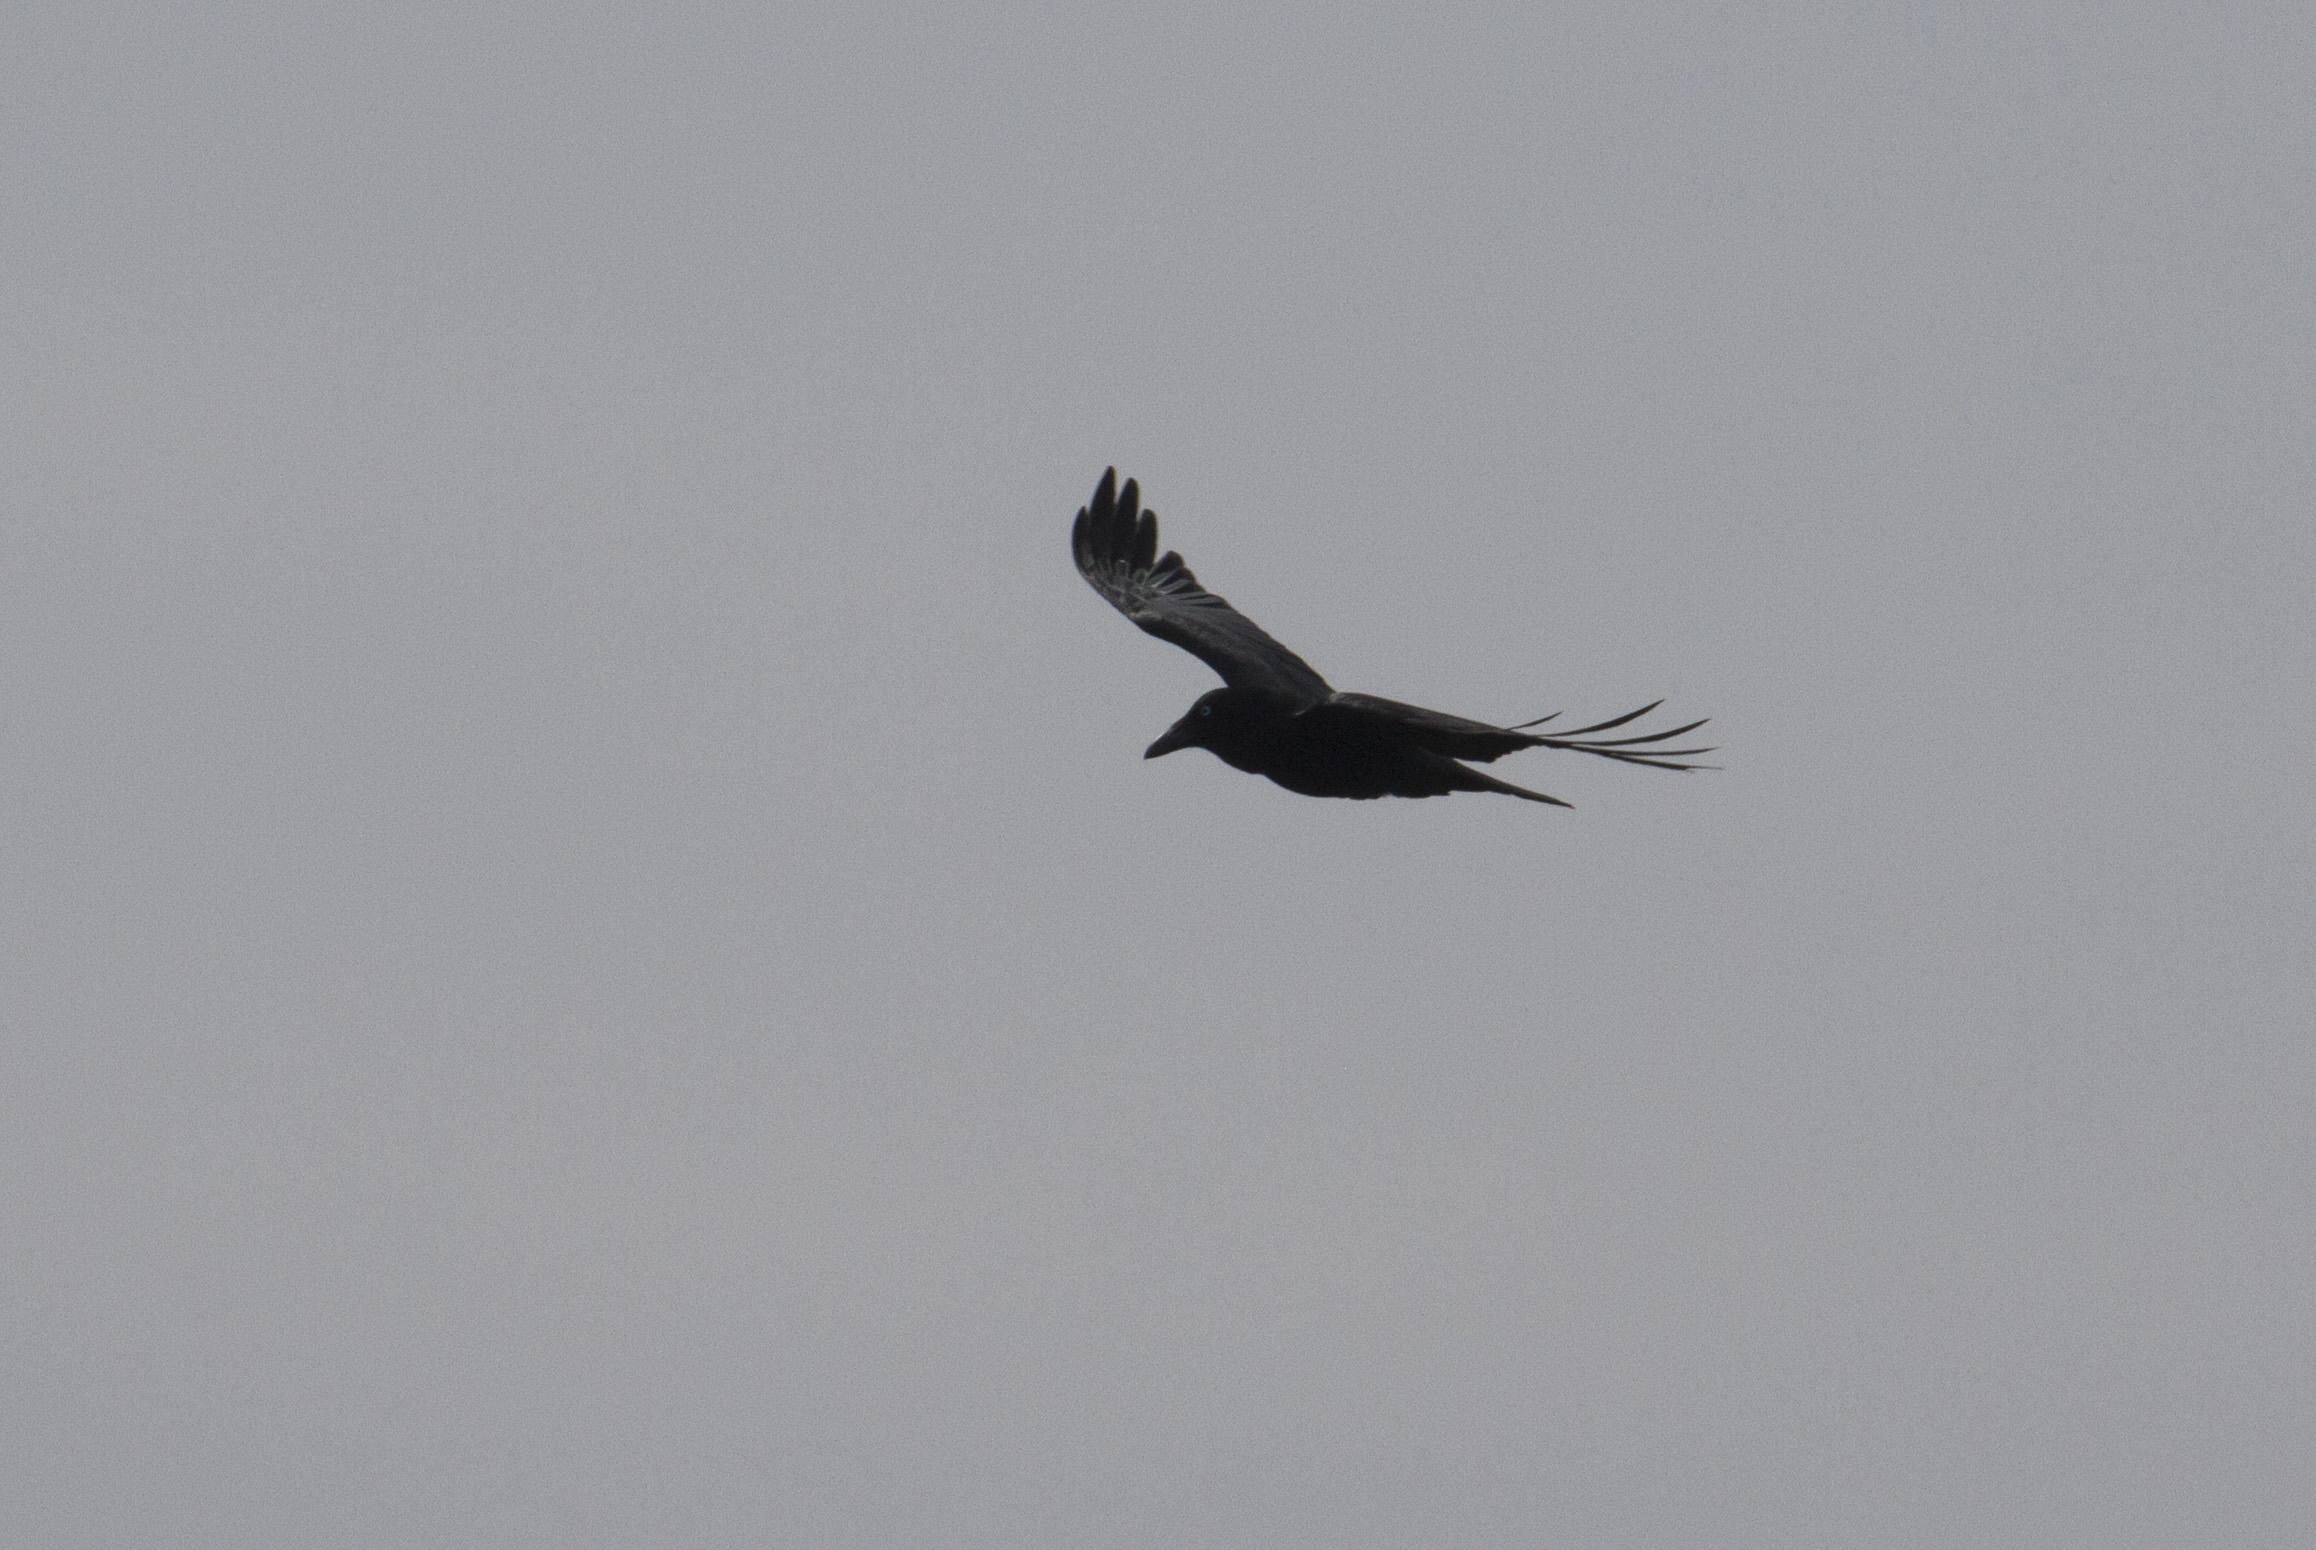 Austrailan Raven